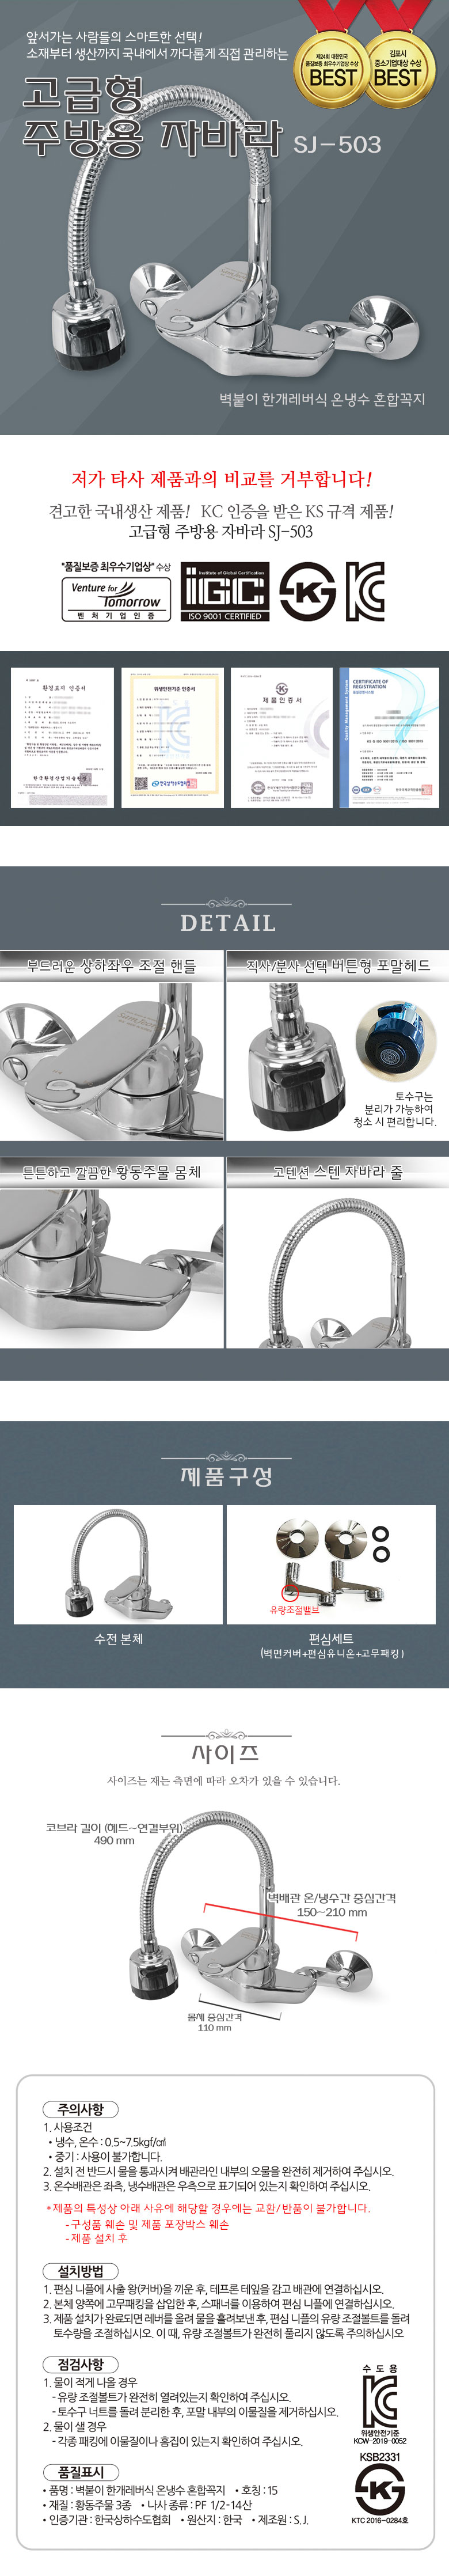 faucet03_sj503.jpg